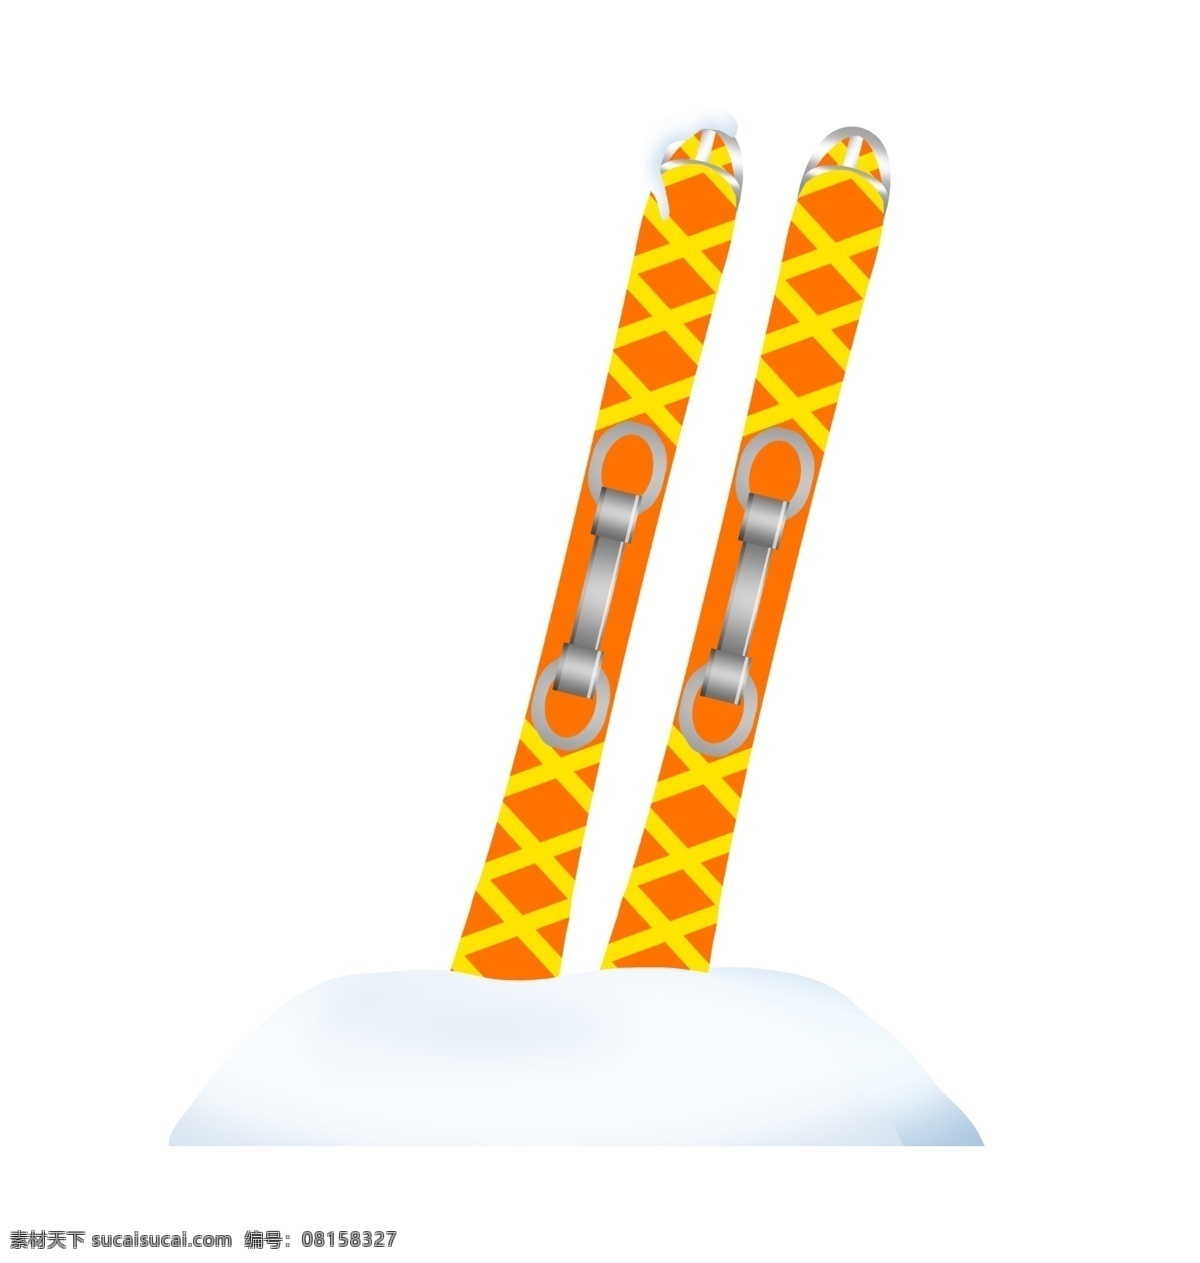 手绘 户外 滑板 插画 手绘滑板 户外运动滑板 格子花纹滑板 冬季运动工具 滑板插画 卡通运动滑板